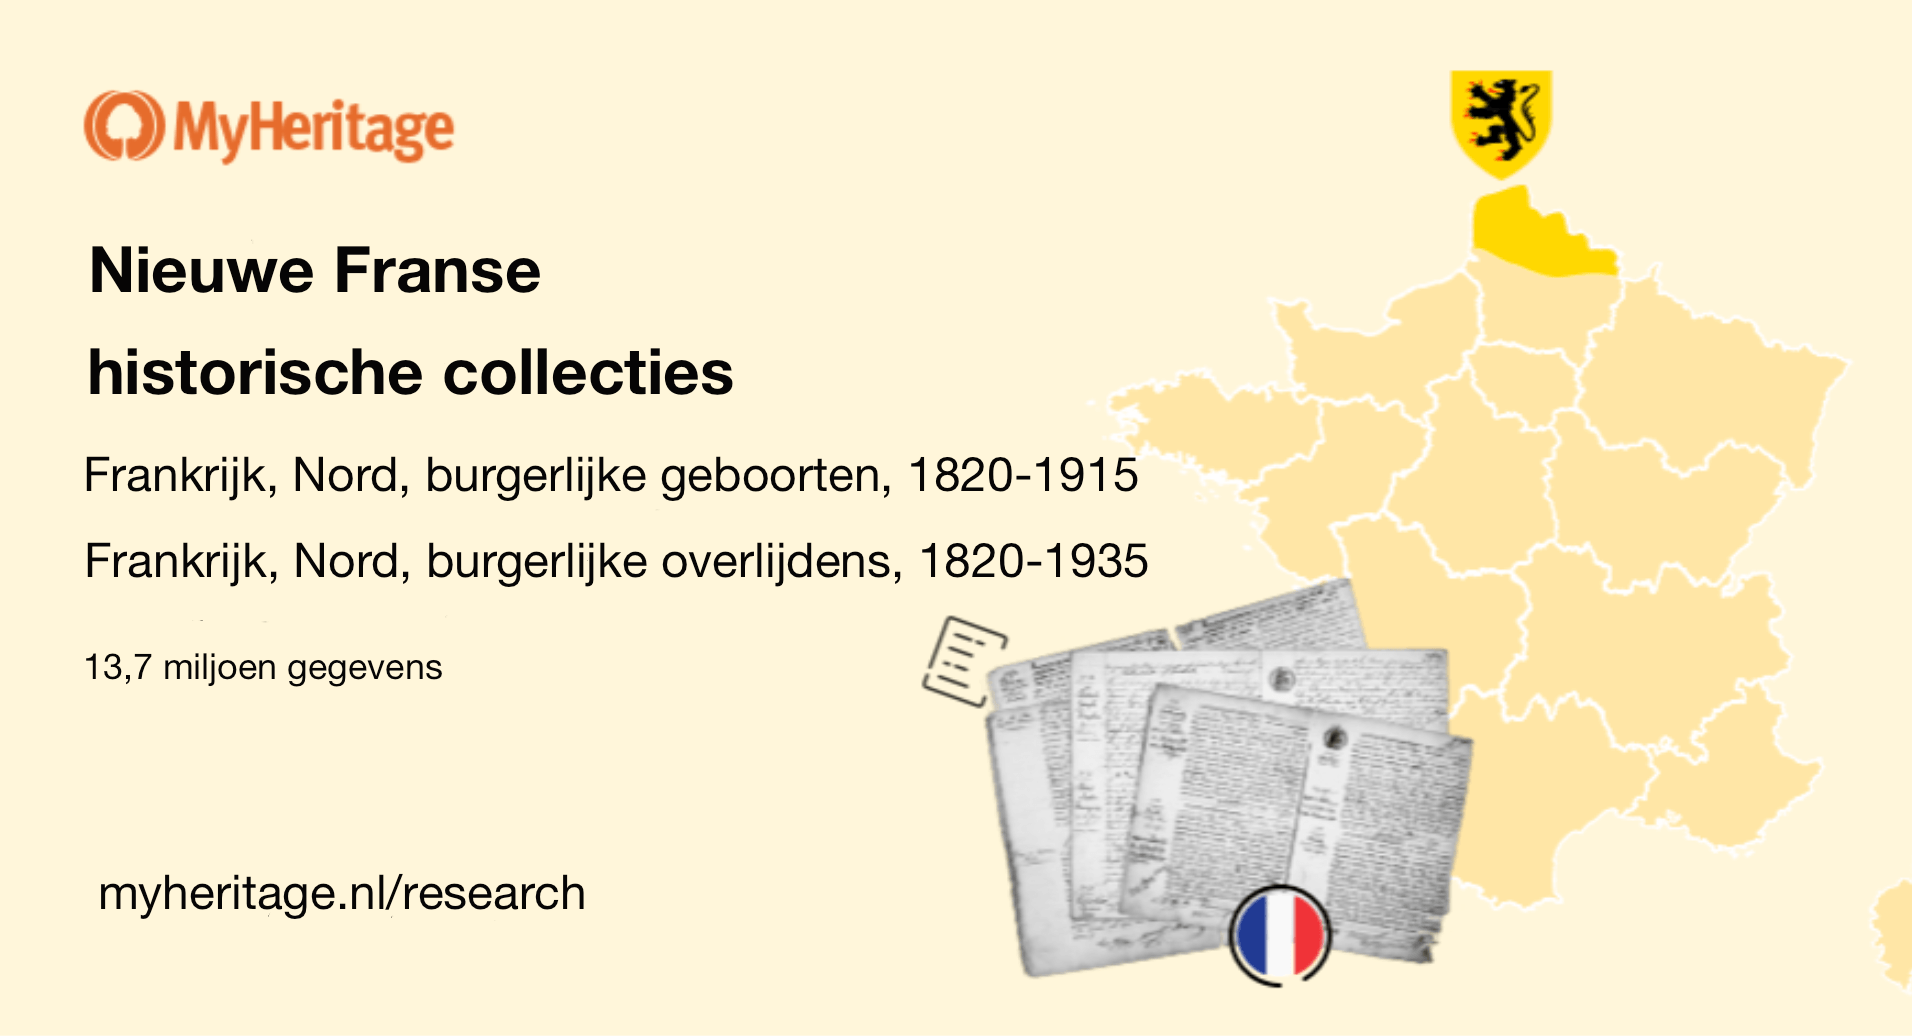 MyHeritage lanceert twee collecties historische gegevens uit Frankrijk, Nord: burgerlijke geboorten en overlijdens